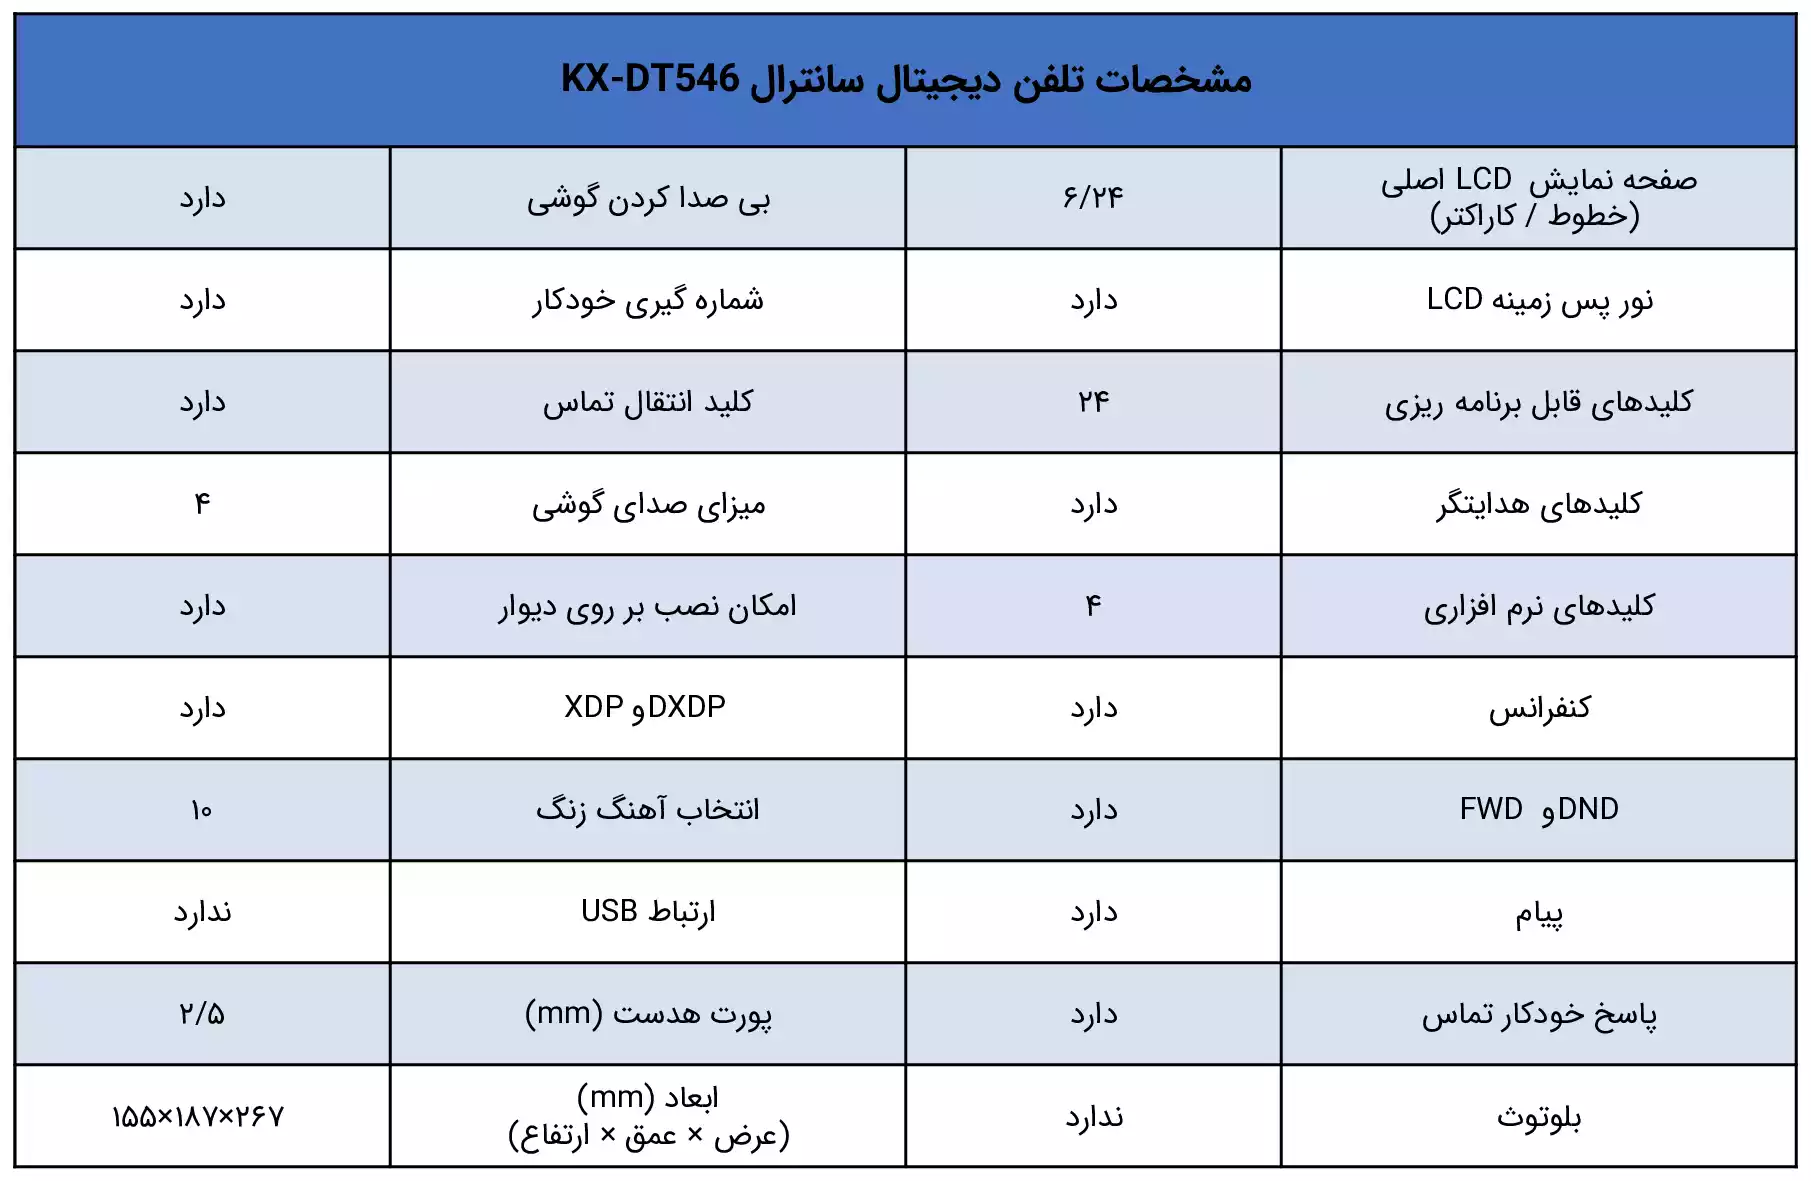 مشخصات تلفن سانترال پاناسونیک KX-DT546 - ماه صنعت انرژی